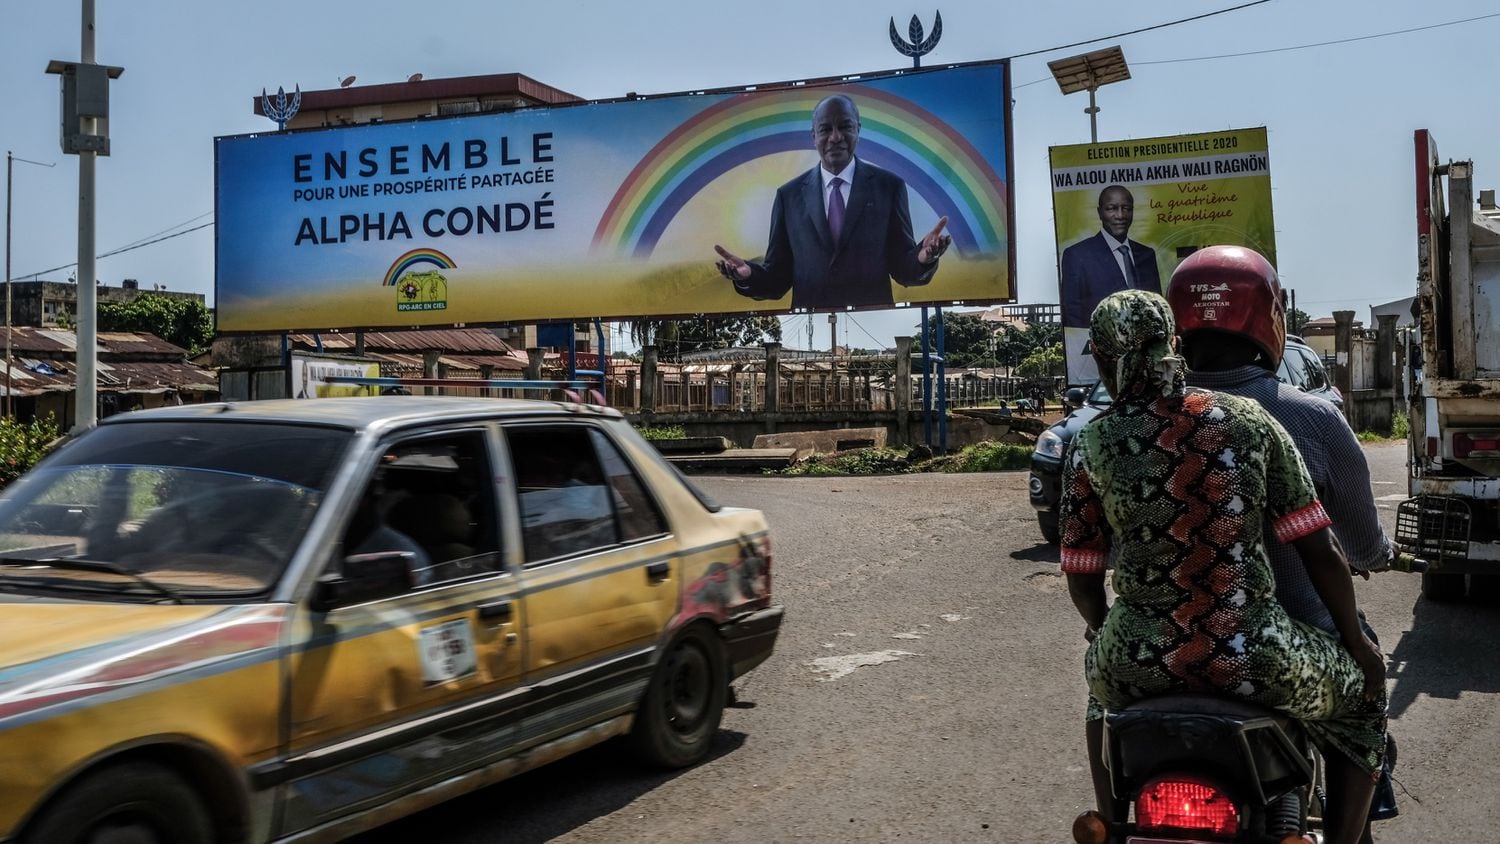 Propaganda eleitoral da campanha de reeleição do presidente da República da Guiné, Alpha Condé, na capital do país, Conacri, em outubro de 2020.